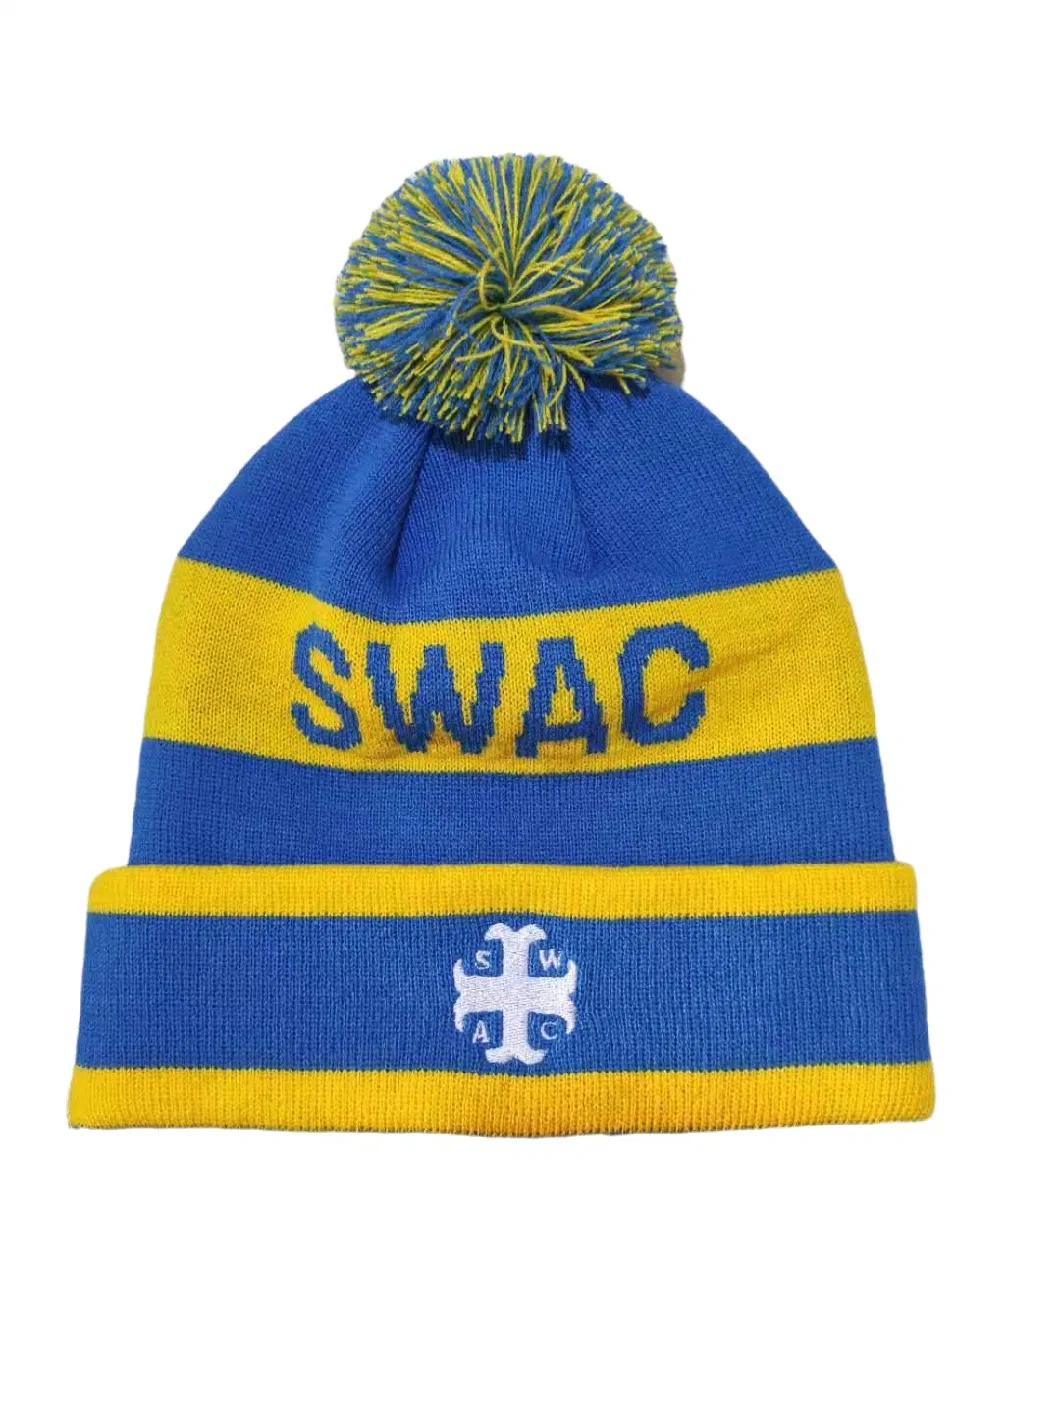 Winter Unisex Embroidery Logo Knit Cuffed Beanie Hat Caps with POM POM